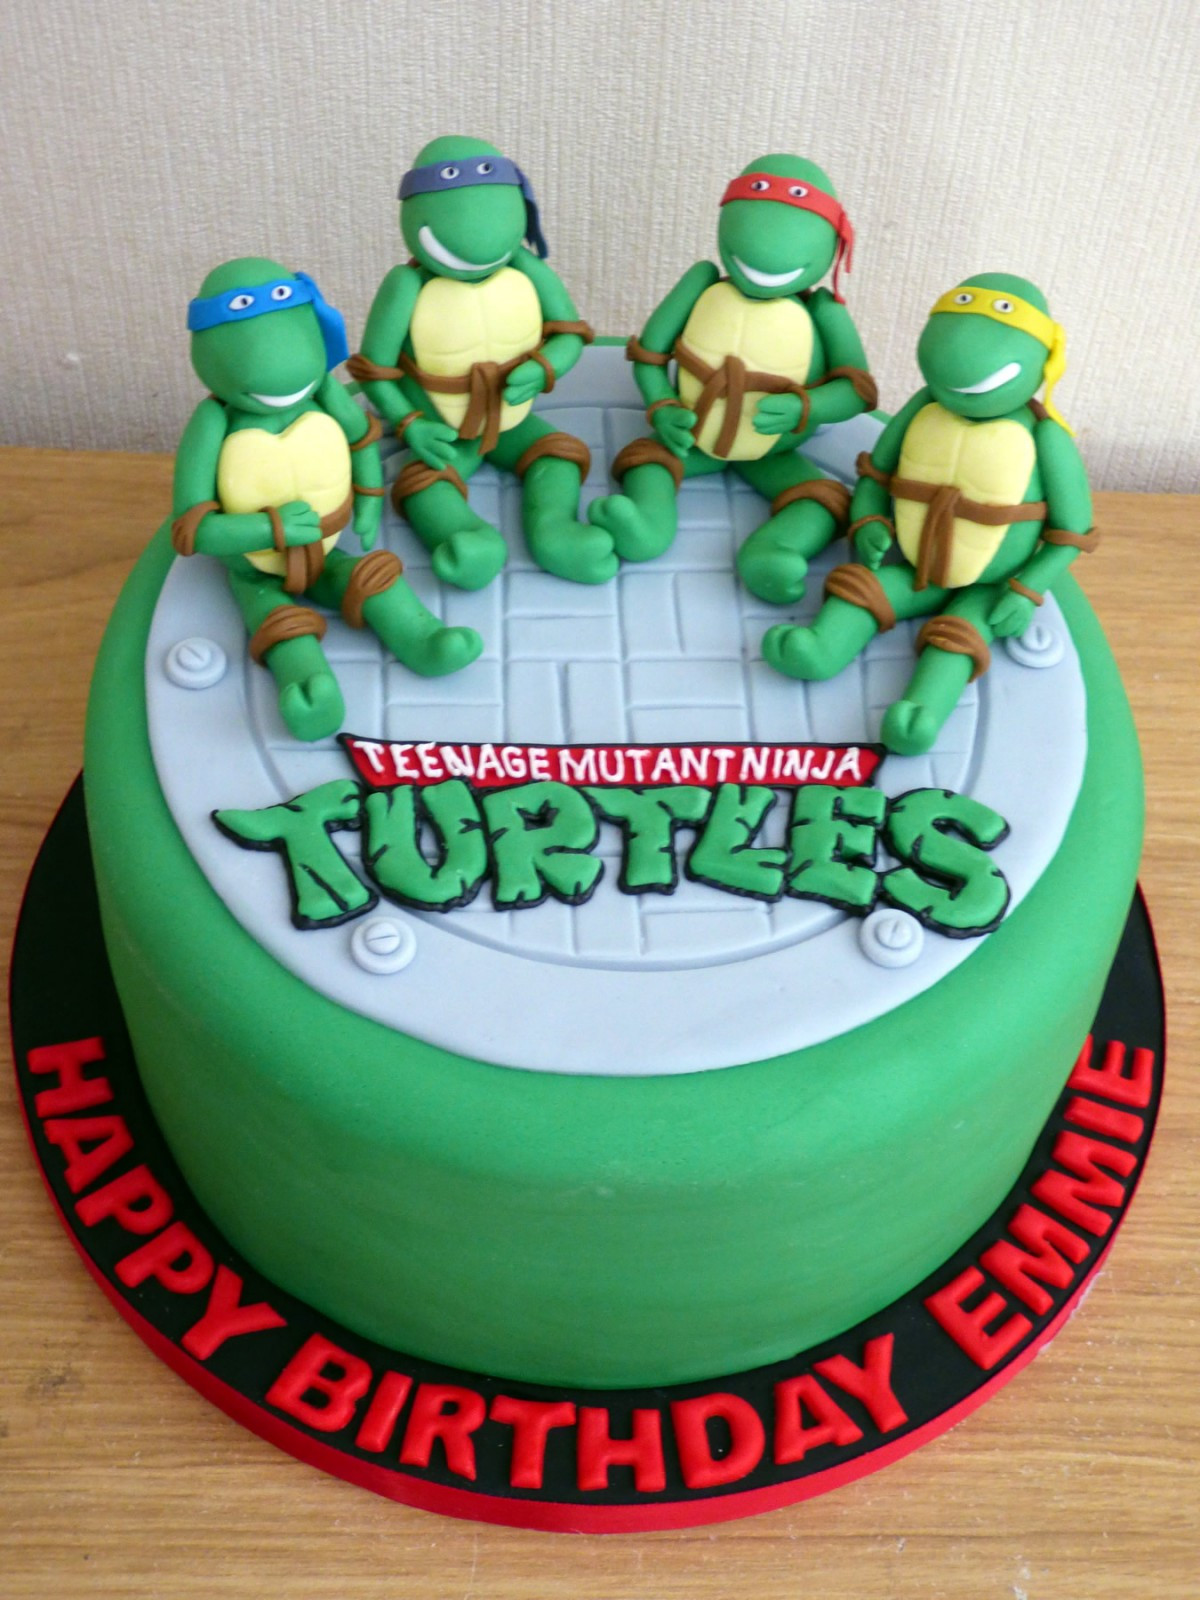 Teenage Mutant Ninja Turtles Birthday Cake
 Teenage Mutant Ninja Turtles Novelty Birthday Cake Susie